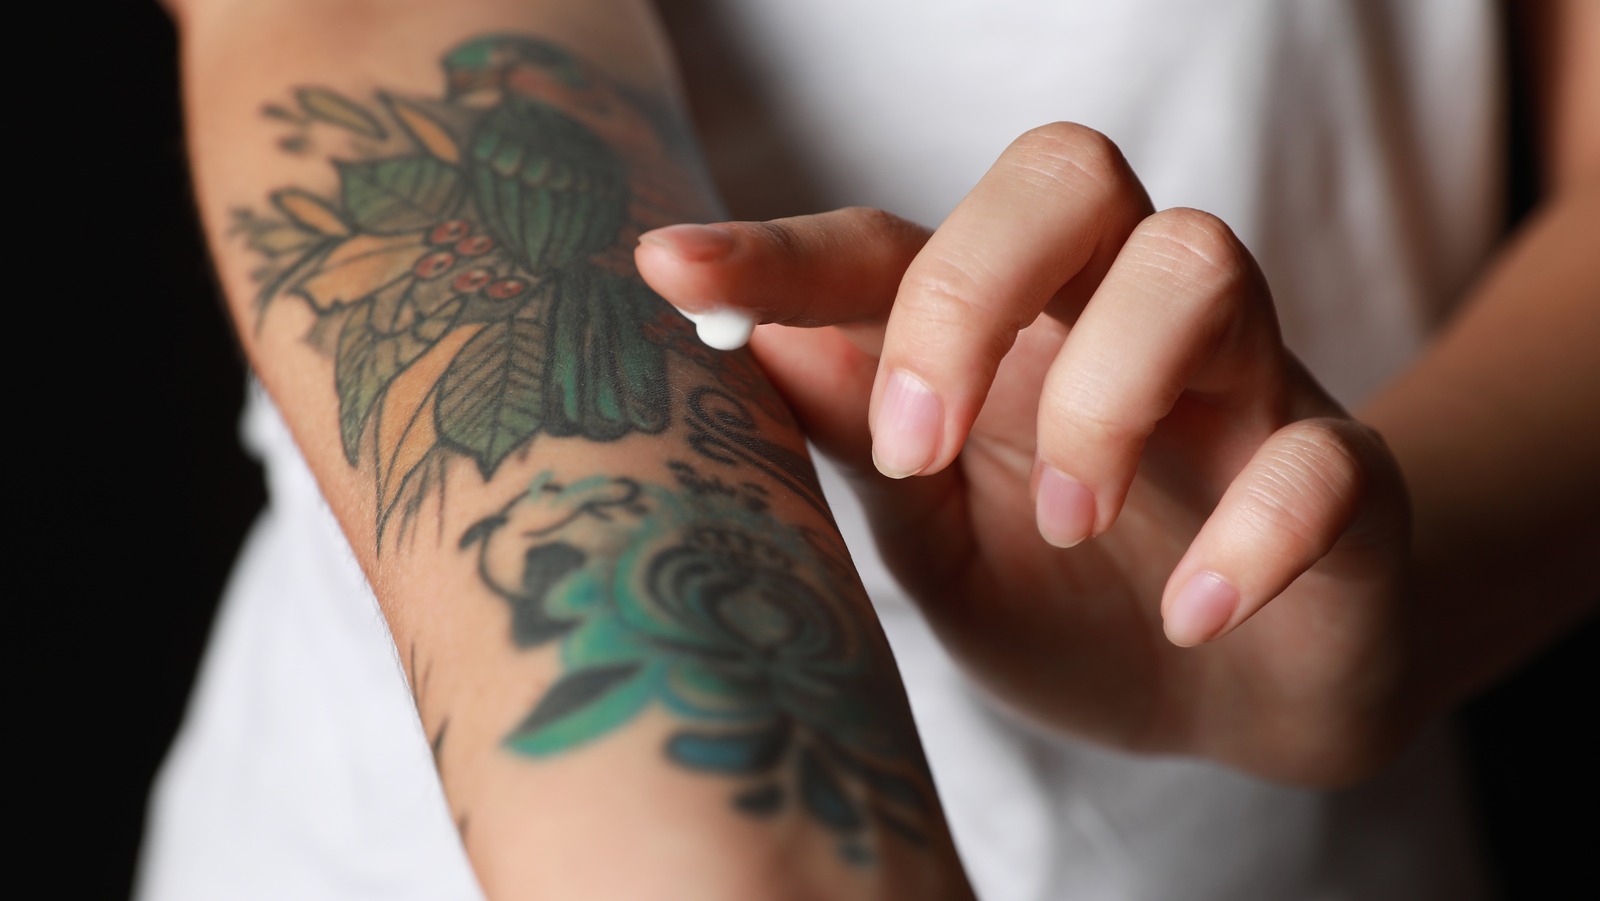 branded tattoos